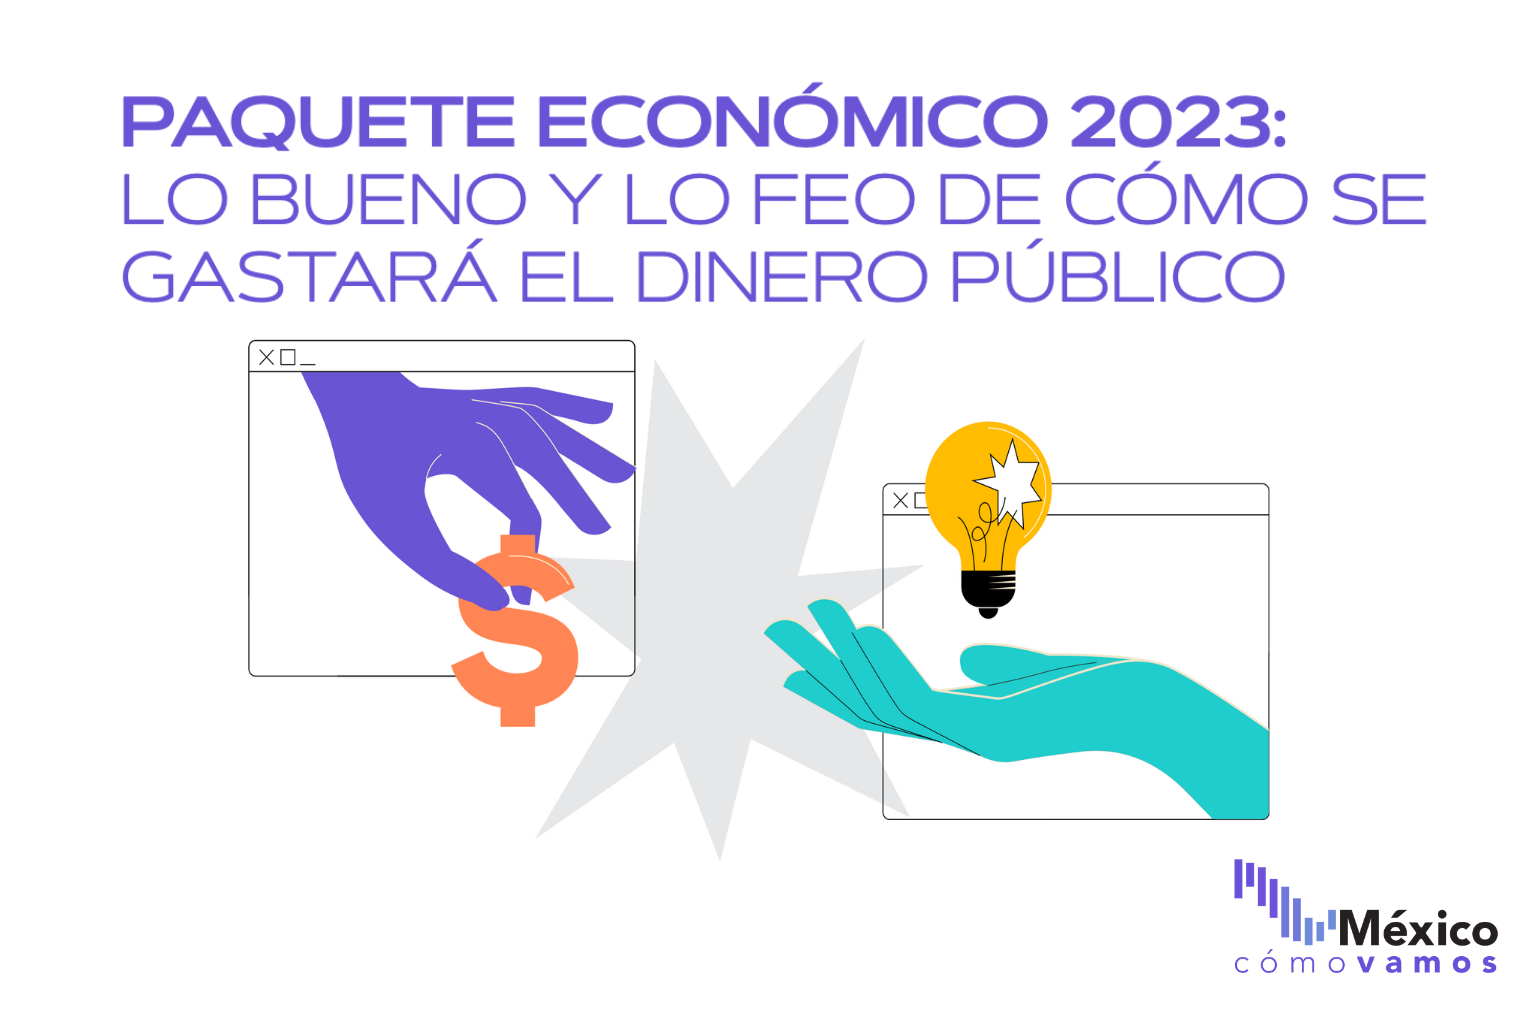 Paquete económico 2023: lo bueno y lo feo de cómo se gastará el dinero público